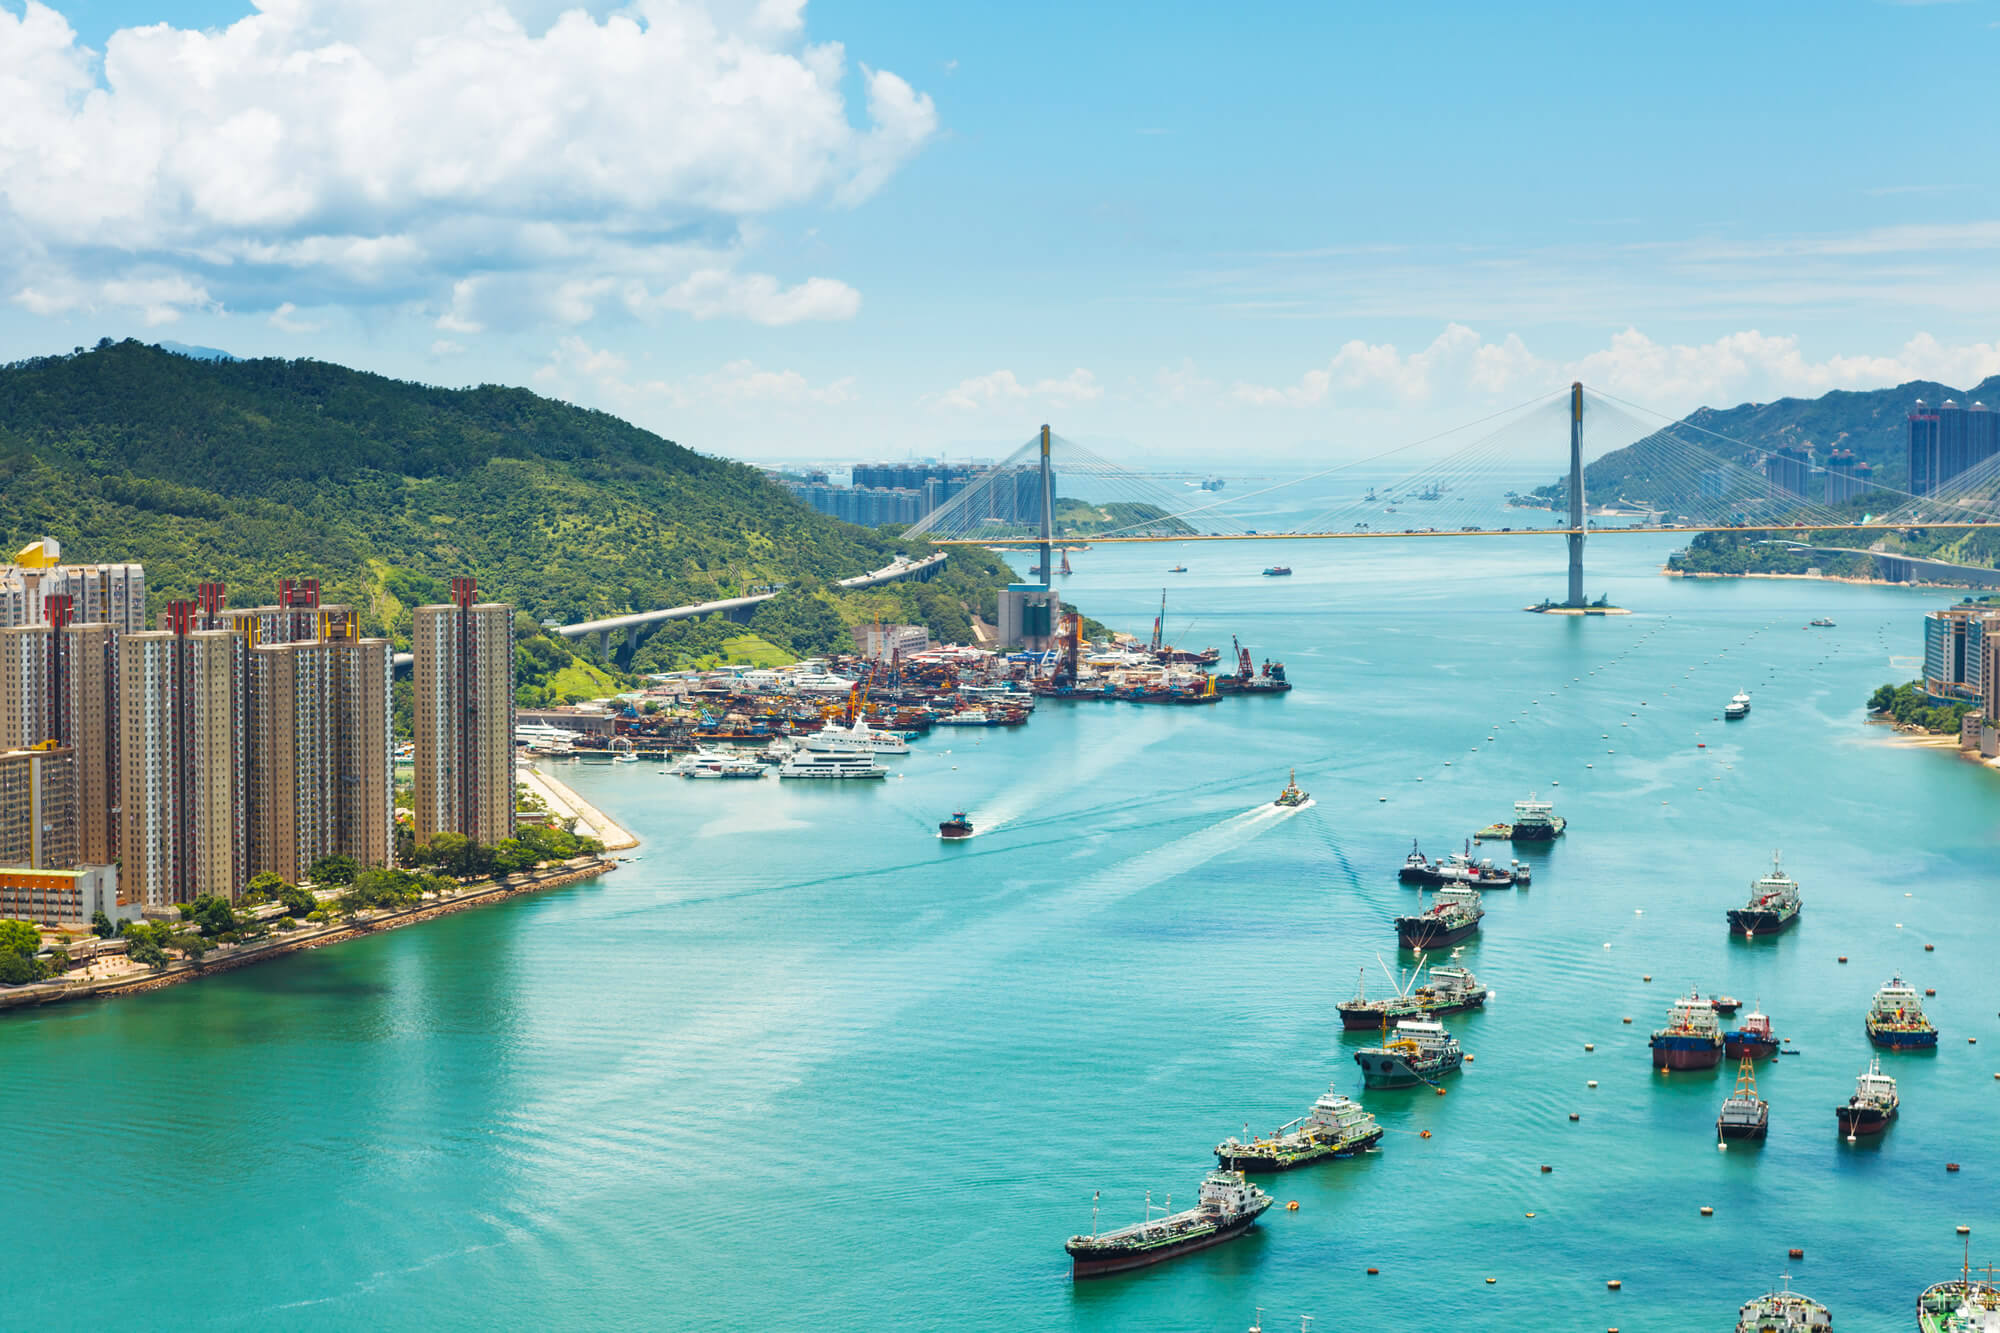 View from Hong Kong